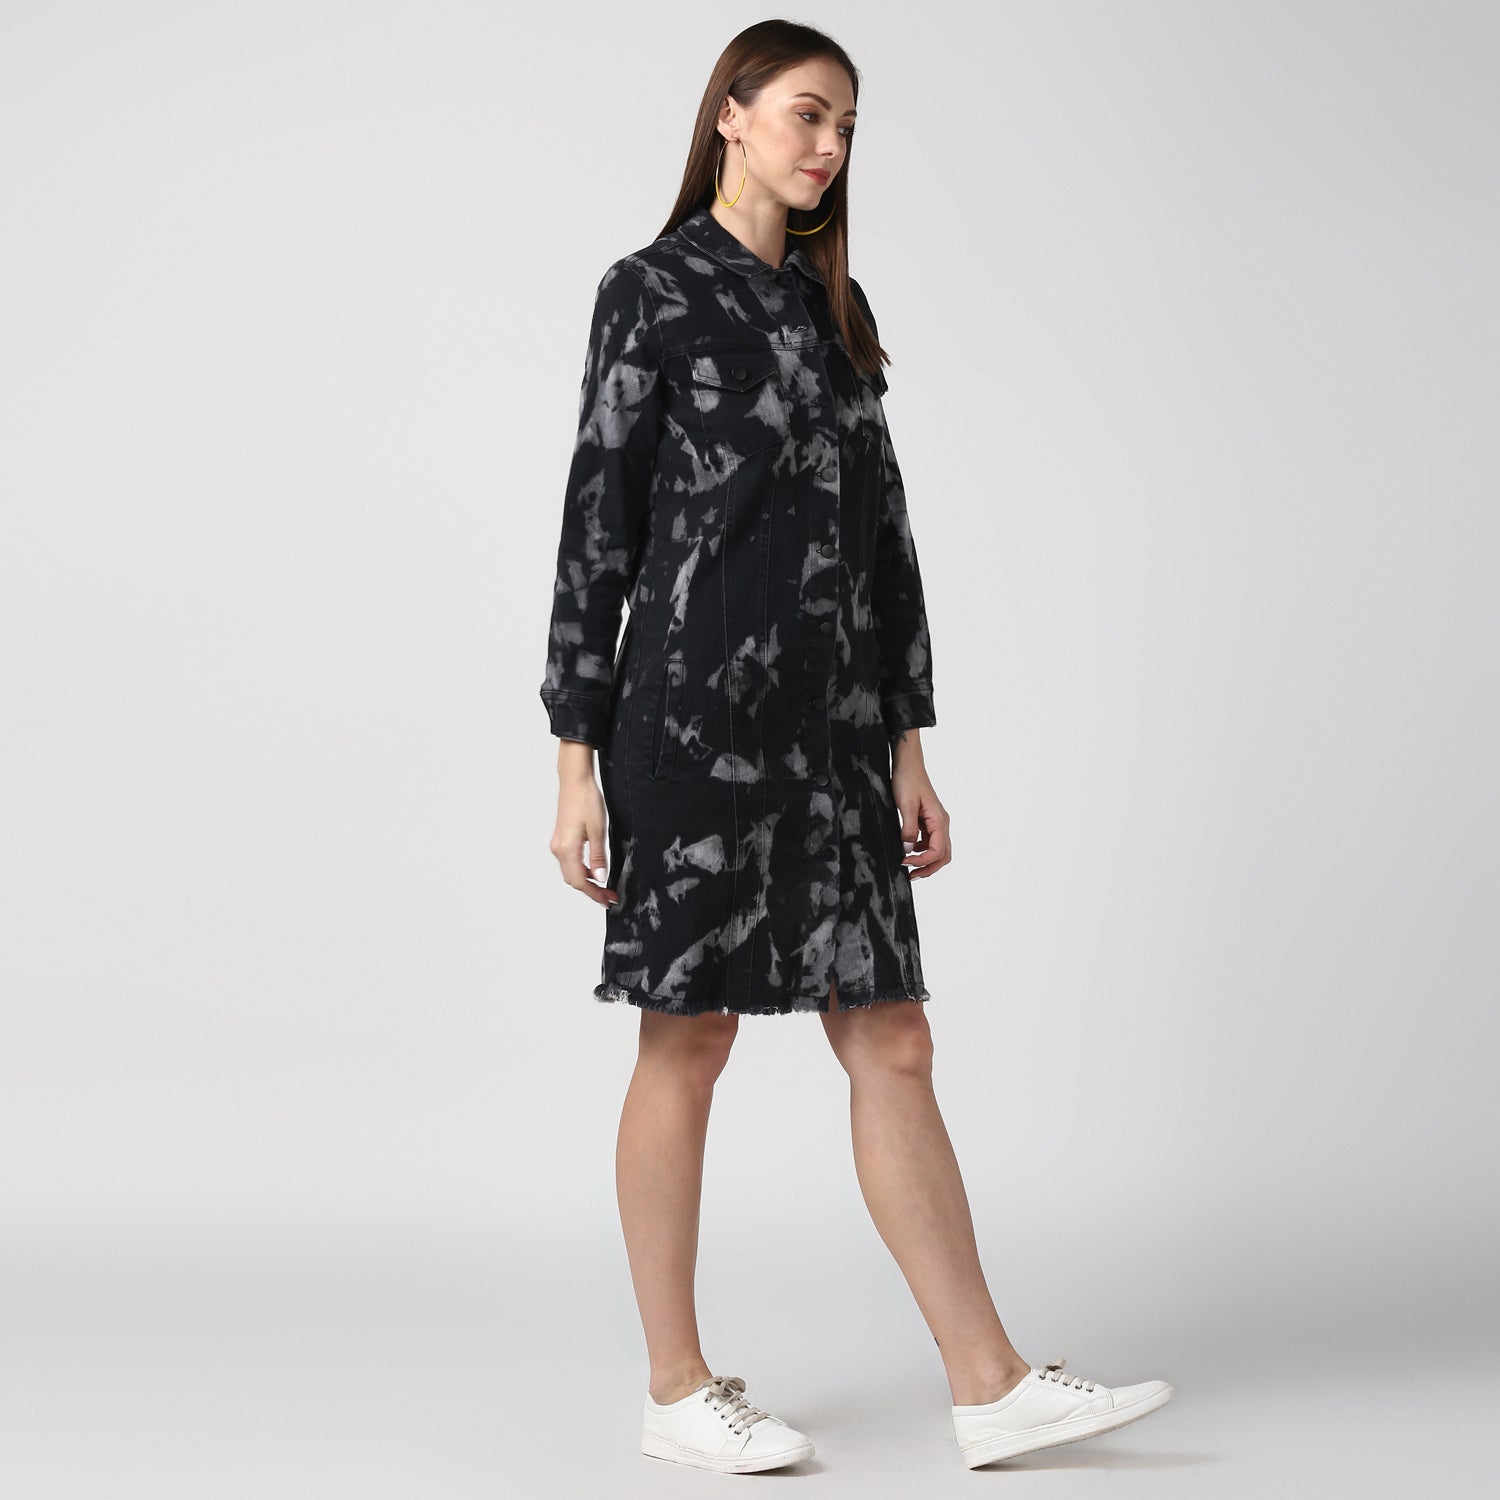 Women's Black Long Overcoat Style Denim Jacket with Cloud effect - StyleStone